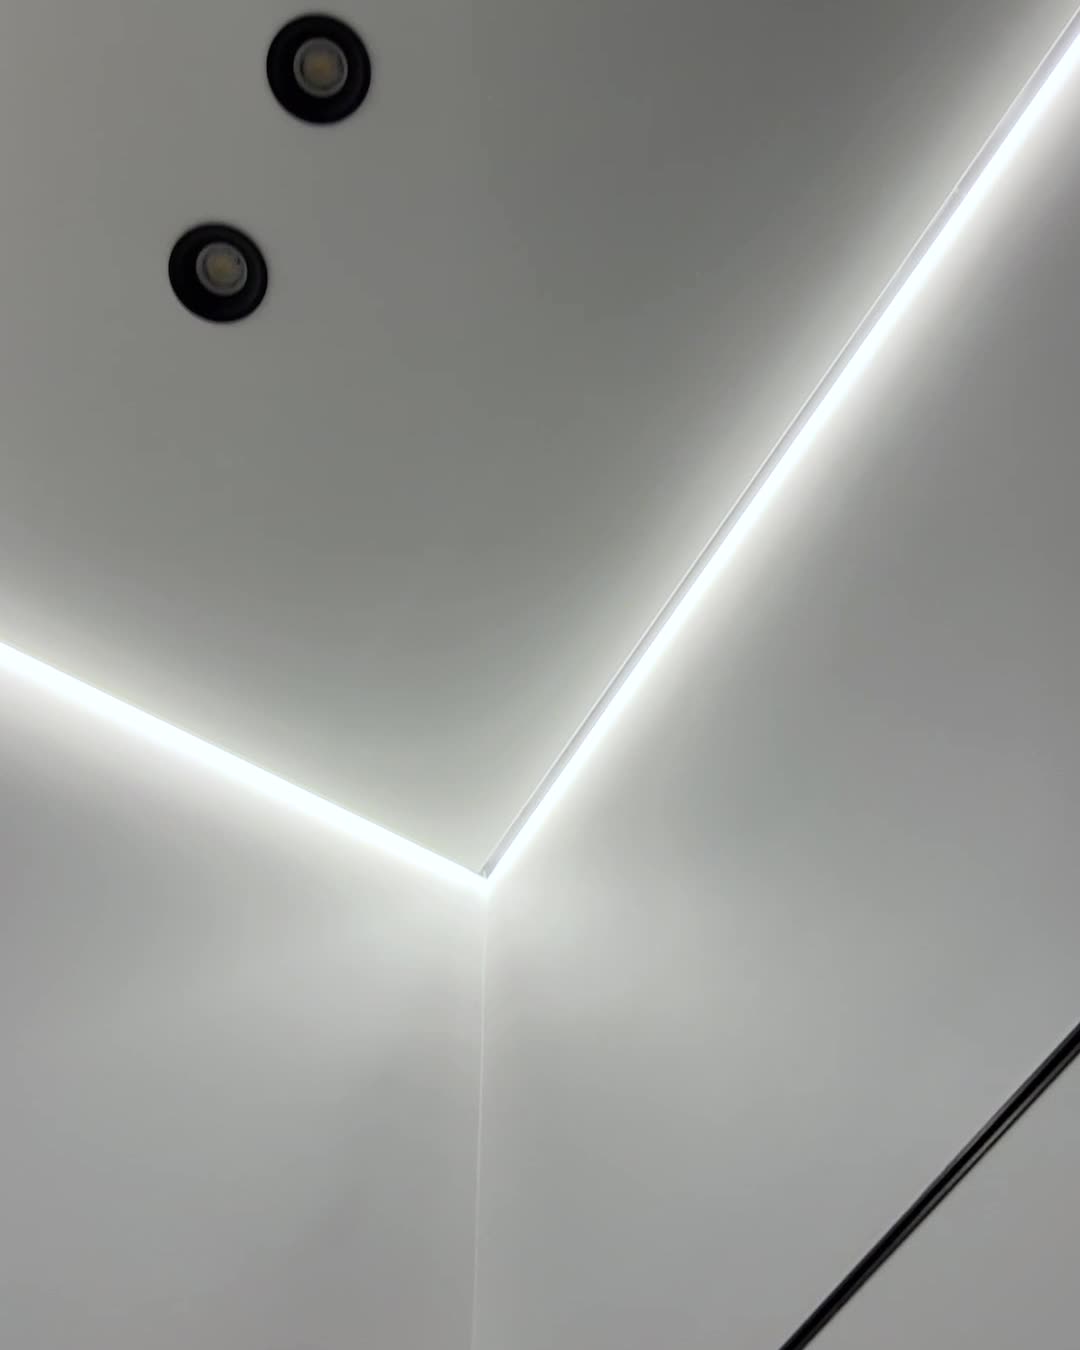 Натяжной потолок с подсветкой по периметру и скрытым карнизом и светодиодными полосами